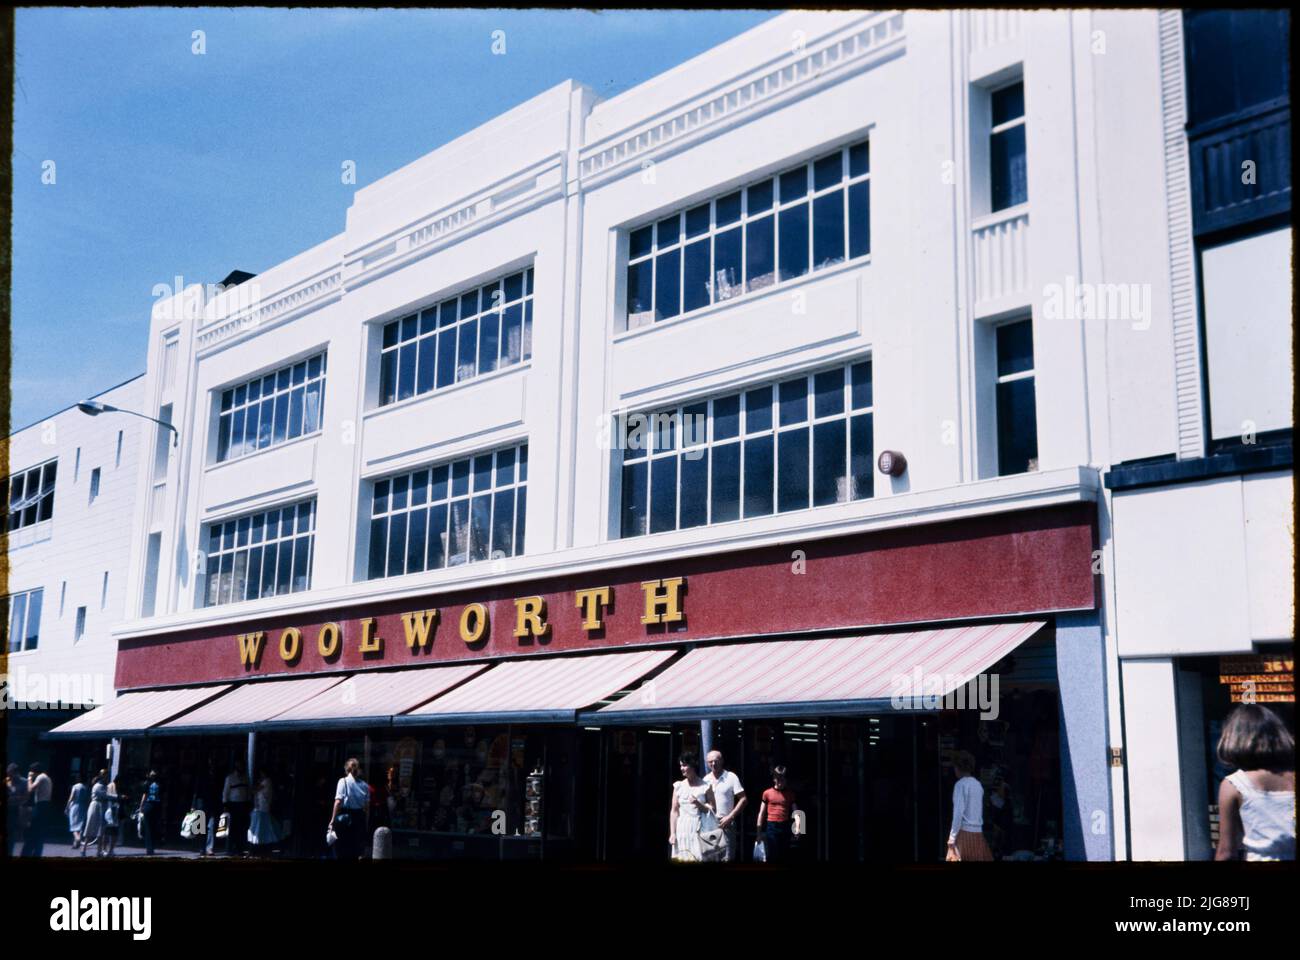 FW Woolworth and Company Limited, 181-185 Western Road, Brighton, la ville de Brighton et Hove, 1970s-1980s. Façade du magasin Woolworth au 181-185 Western Road, vue du sud-est. Le magasin Woolworth de Western Road, numéro 73, a ouvert ses portes en 1916. Il a été modernisé et a été réduit en taille en 1964, et a été plus tard partiellement occupé par Clinton Cards. La boutique a fermé ses portes en 2008 et une succursale de H&amp;M a ouvert ses portes en 2009. Banque D'Images